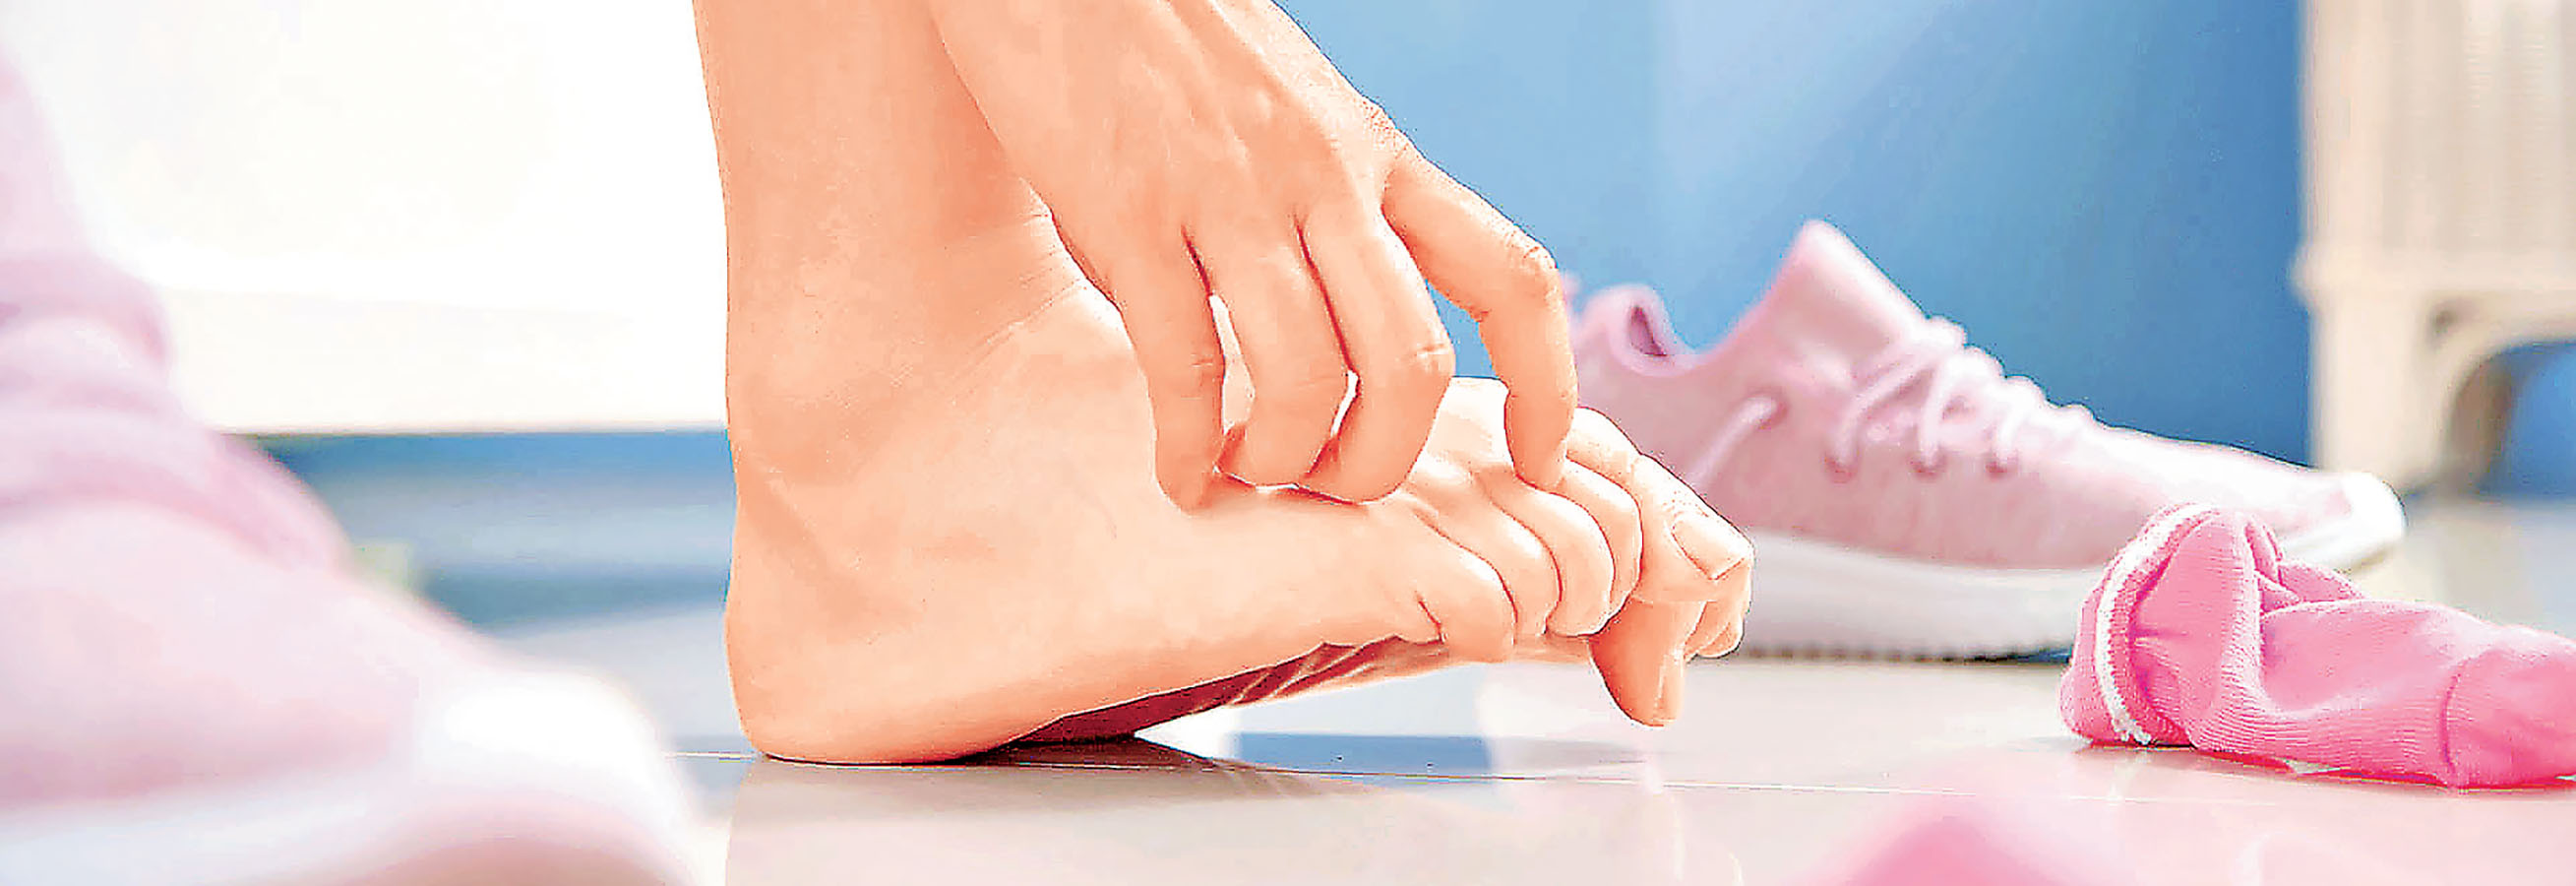 ■腳部要小心護理。